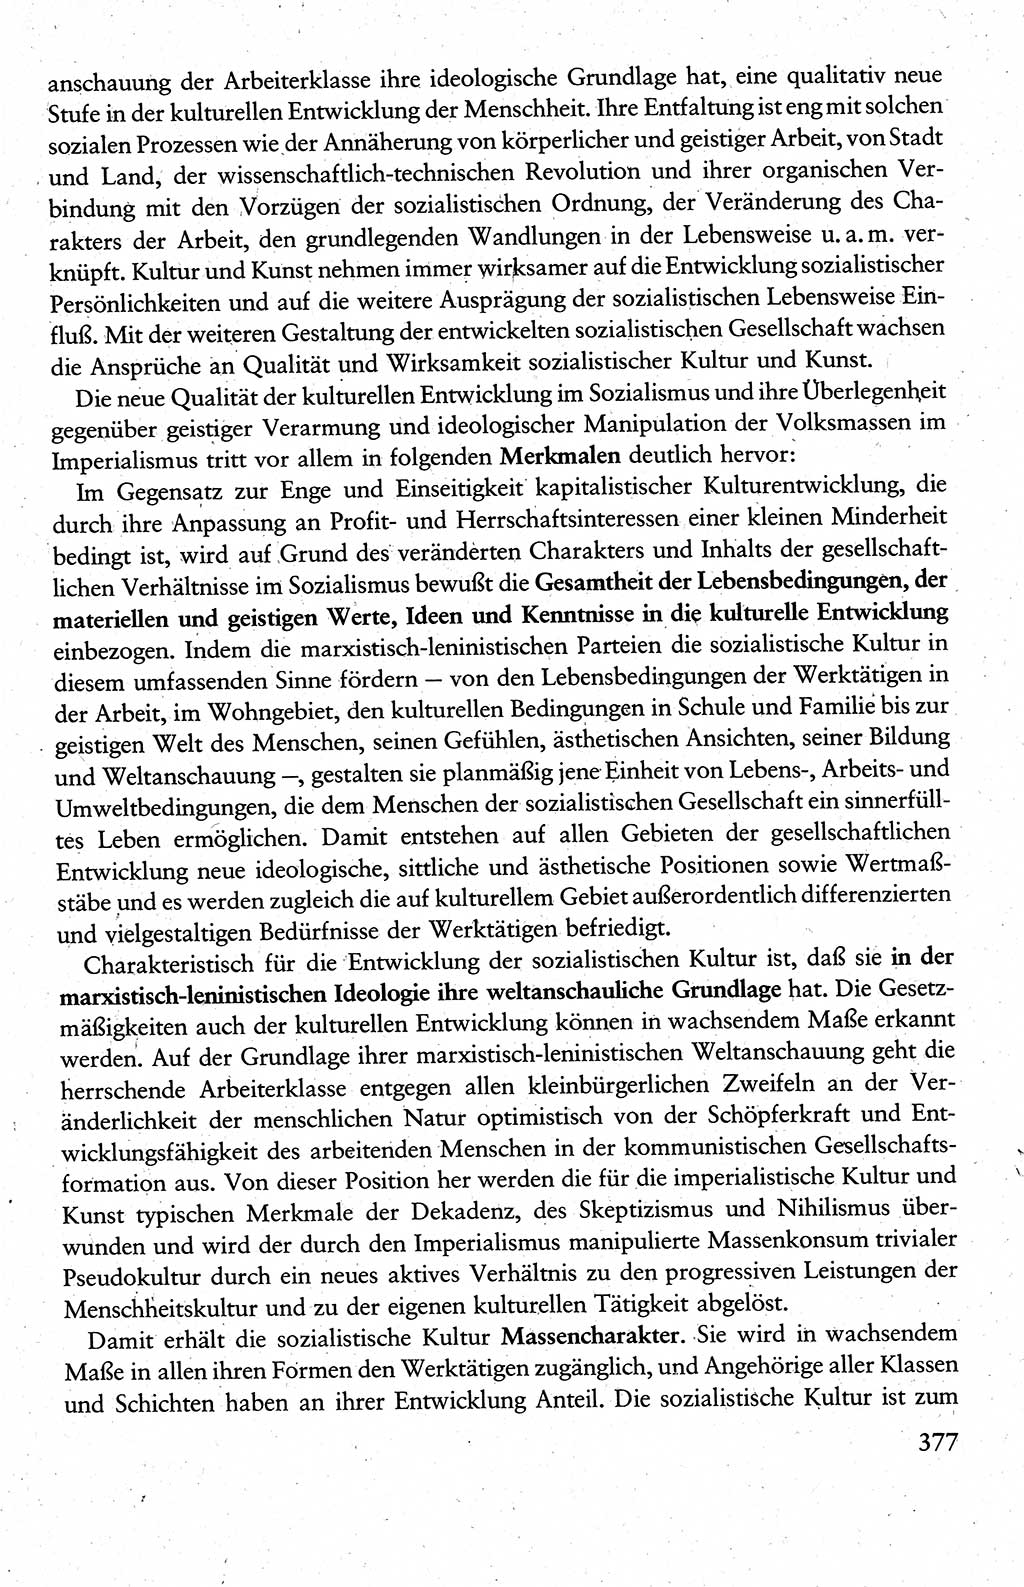 Wissenschaftlicher Kommunismus [Deutsche Demokratische Republik (DDR)], Lehrbuch für das marxistisch-leninistische Grundlagenstudium 1983, Seite 377 (Wiss. Komm. DDR Lb. 1983, S. 377)